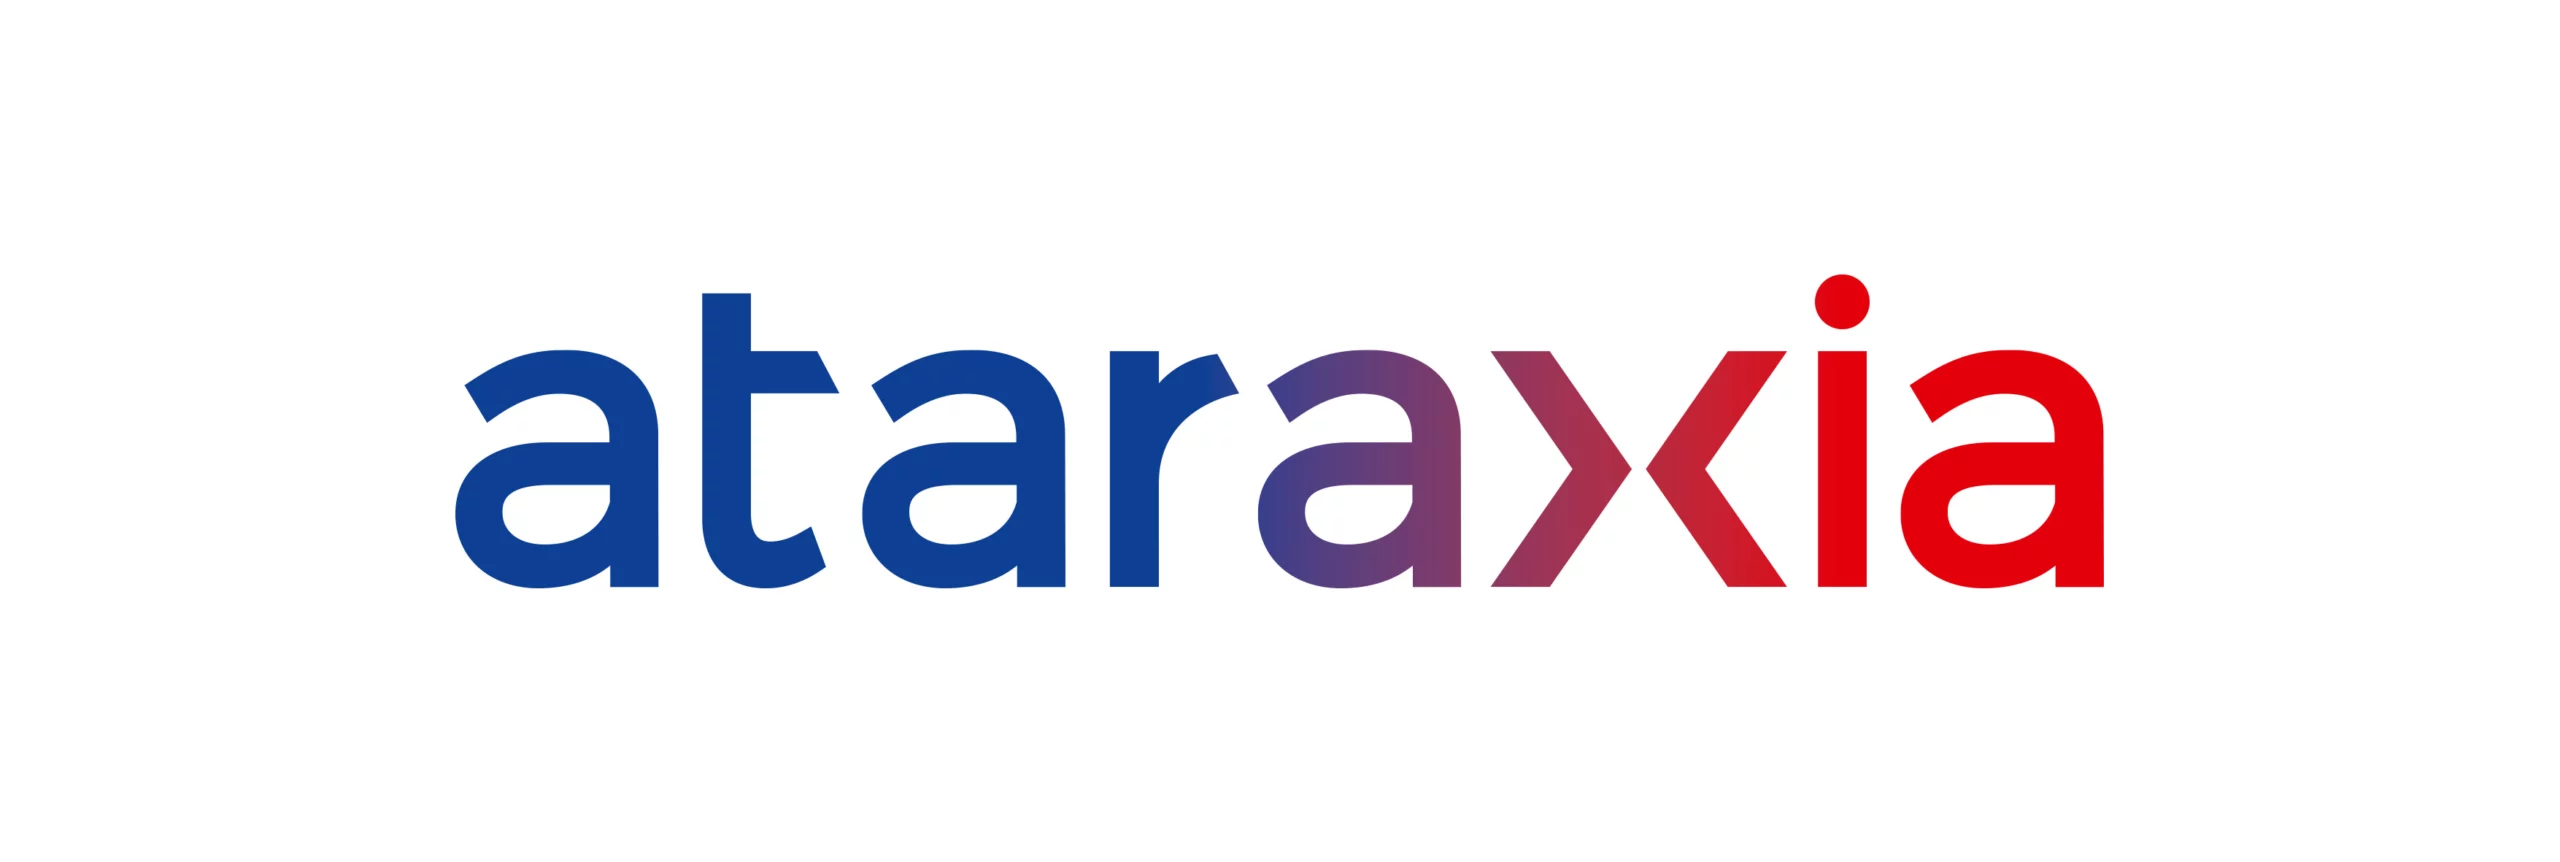 ATARAXIA logo modif